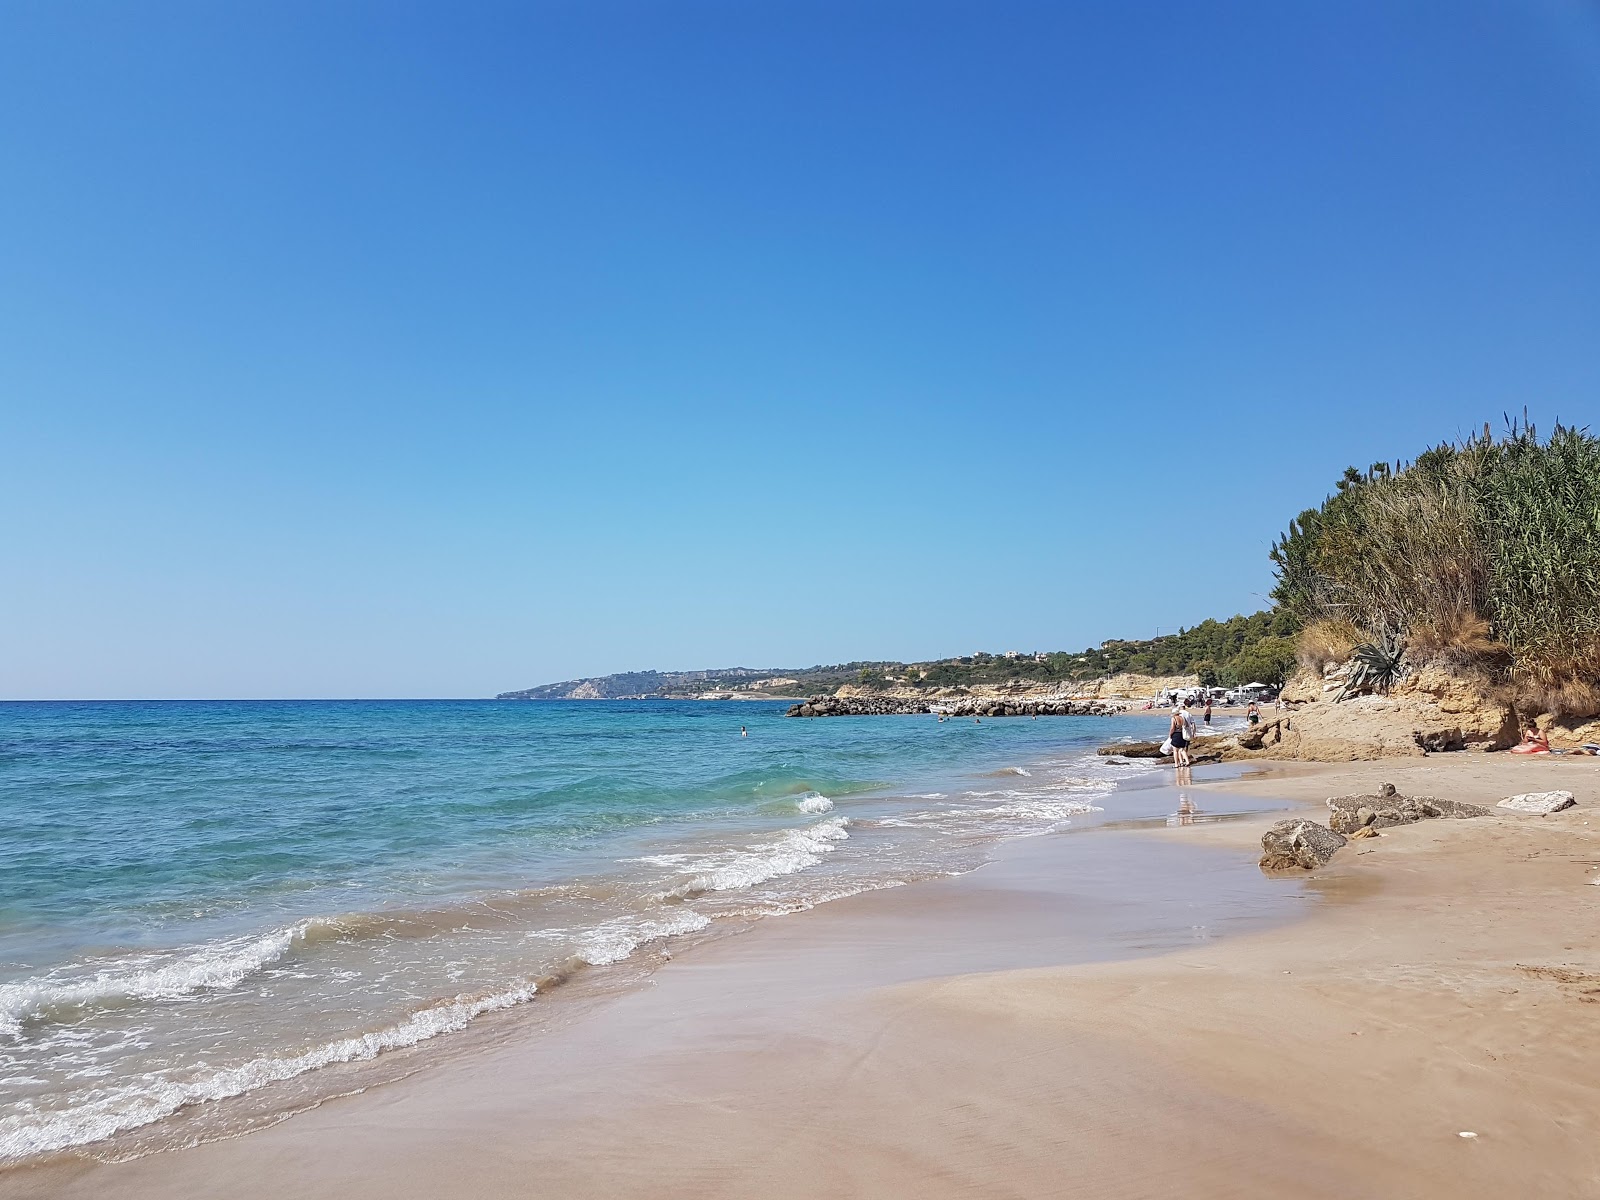 Photo de Kanali beach - endroit populaire parmi les connaisseurs de la détente